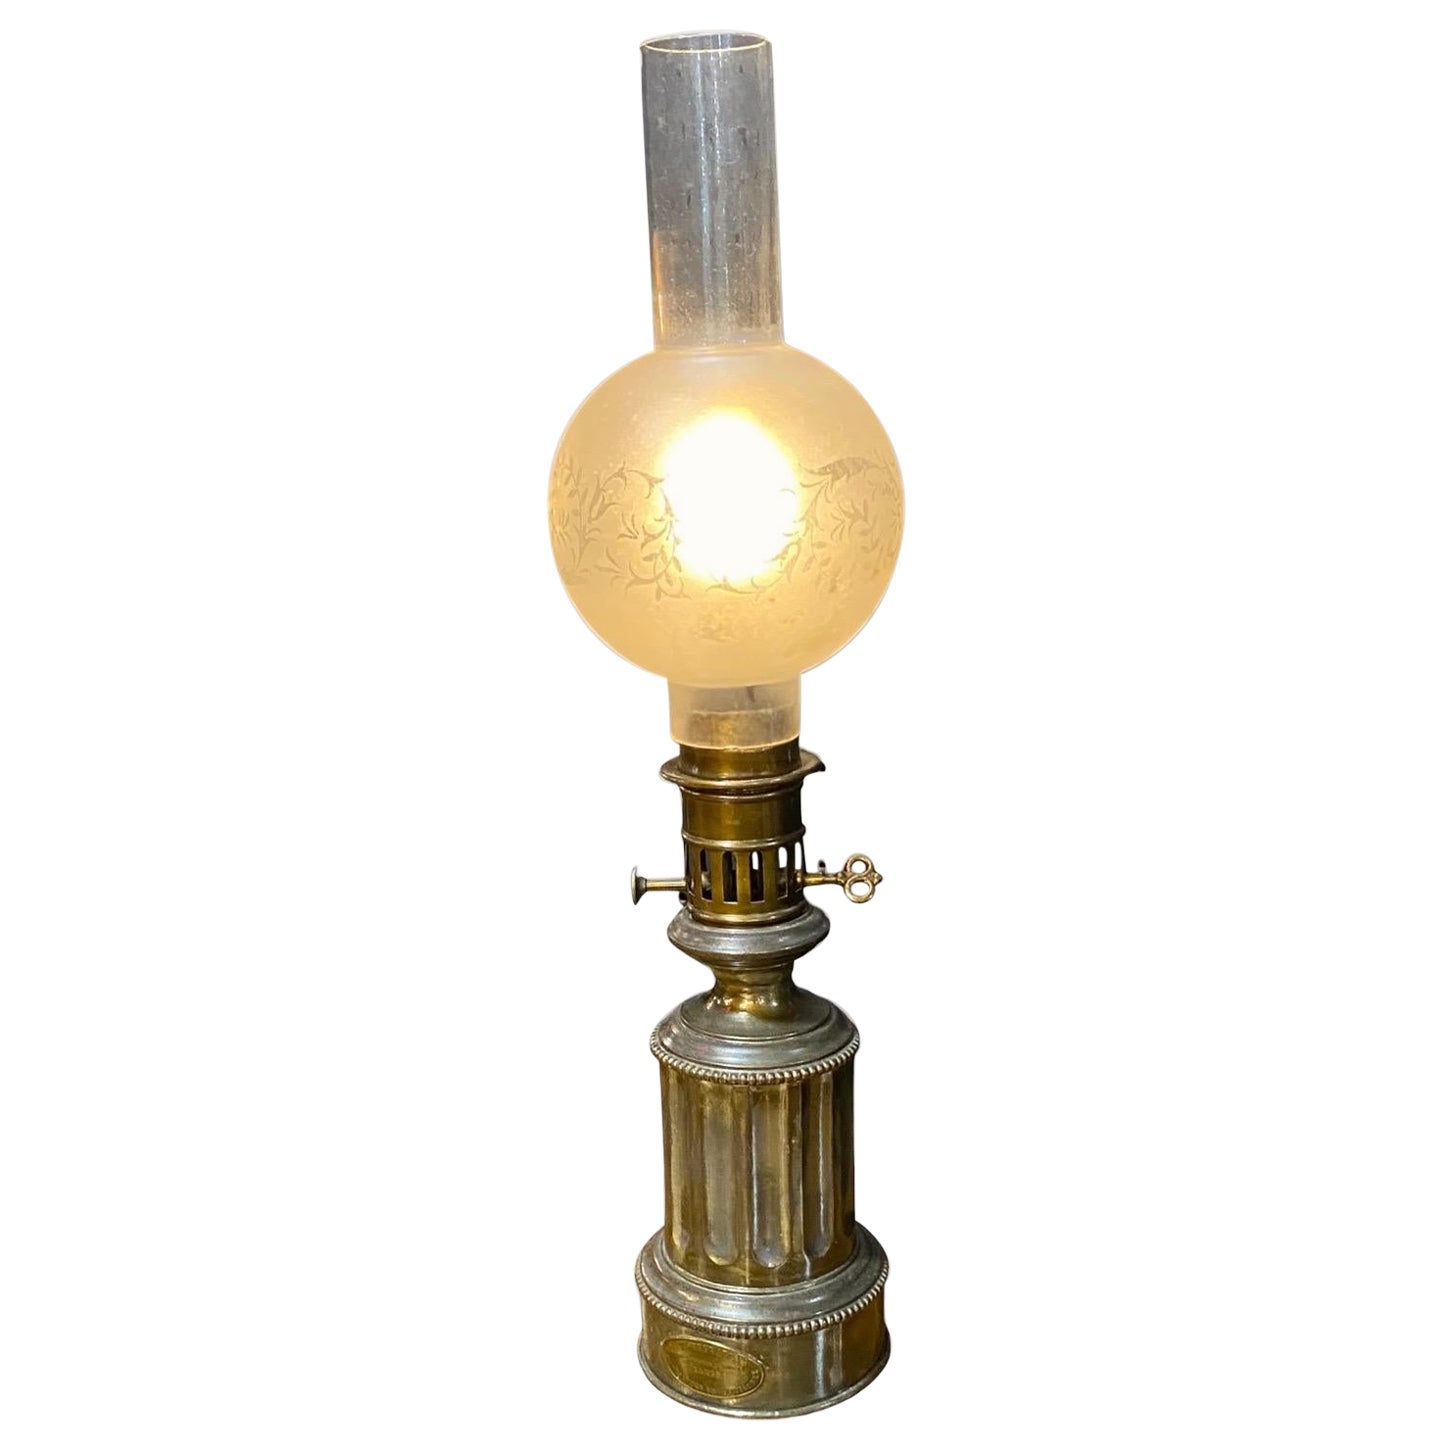 Ancienne lampe modératrice française du milieu du 19e siècle maintenant électrifiée